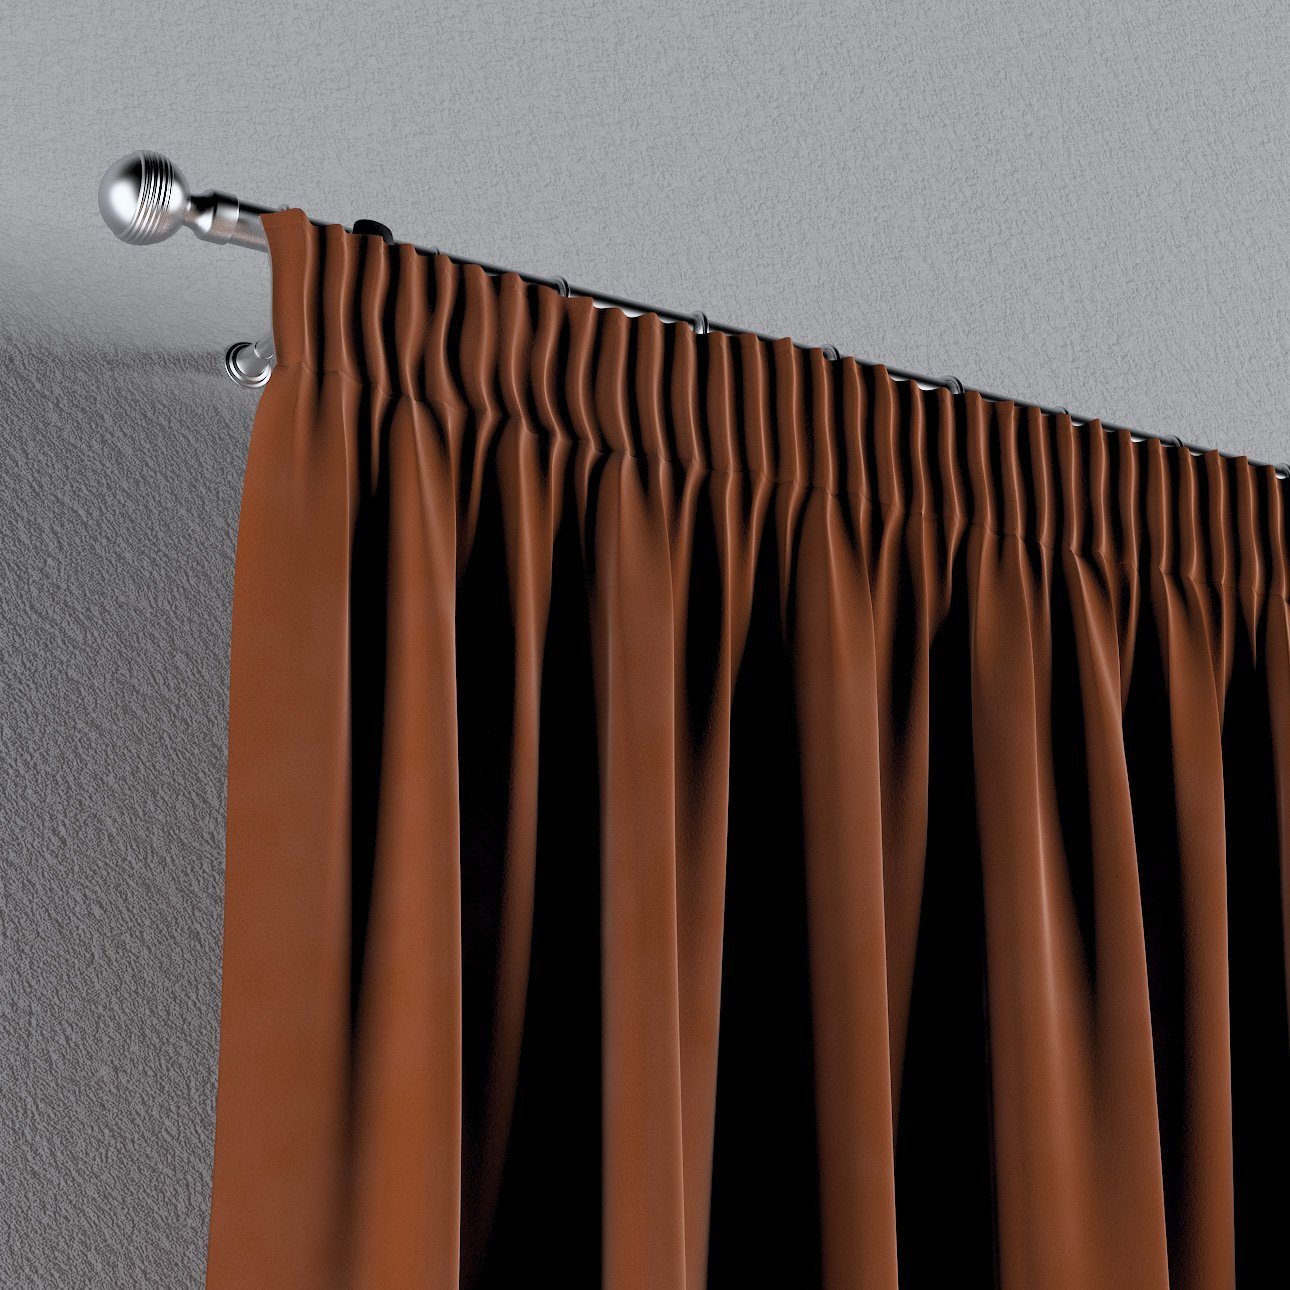 Kräuselband Vorhang braun-karamell 130x100 Velvet, cm, Dekoria Vorhang mit